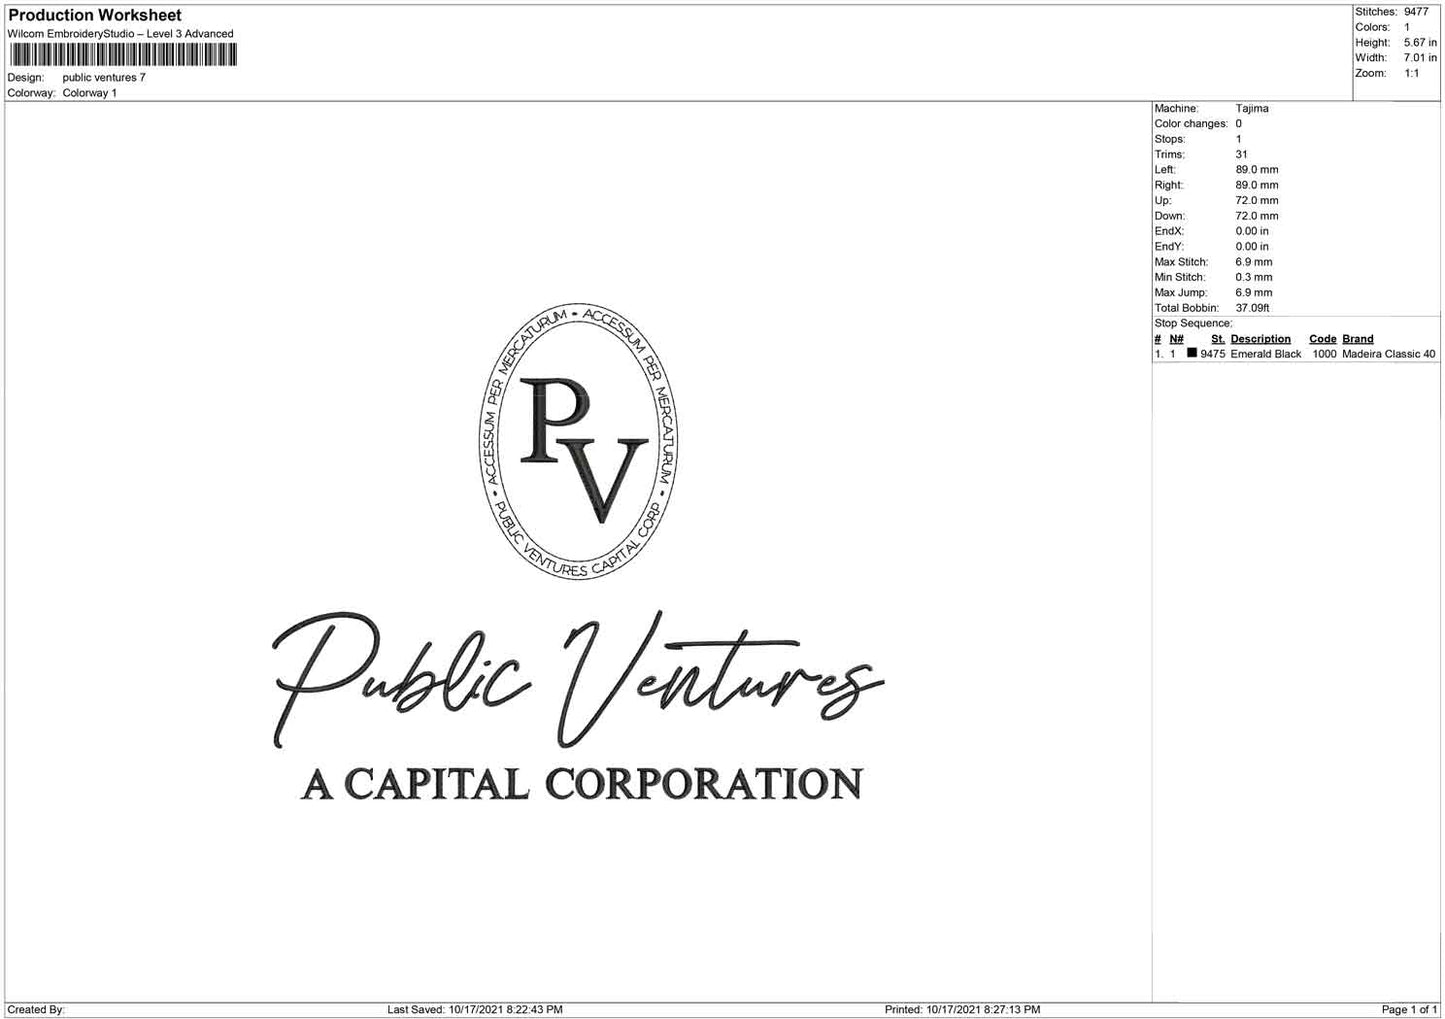 PV public ventures